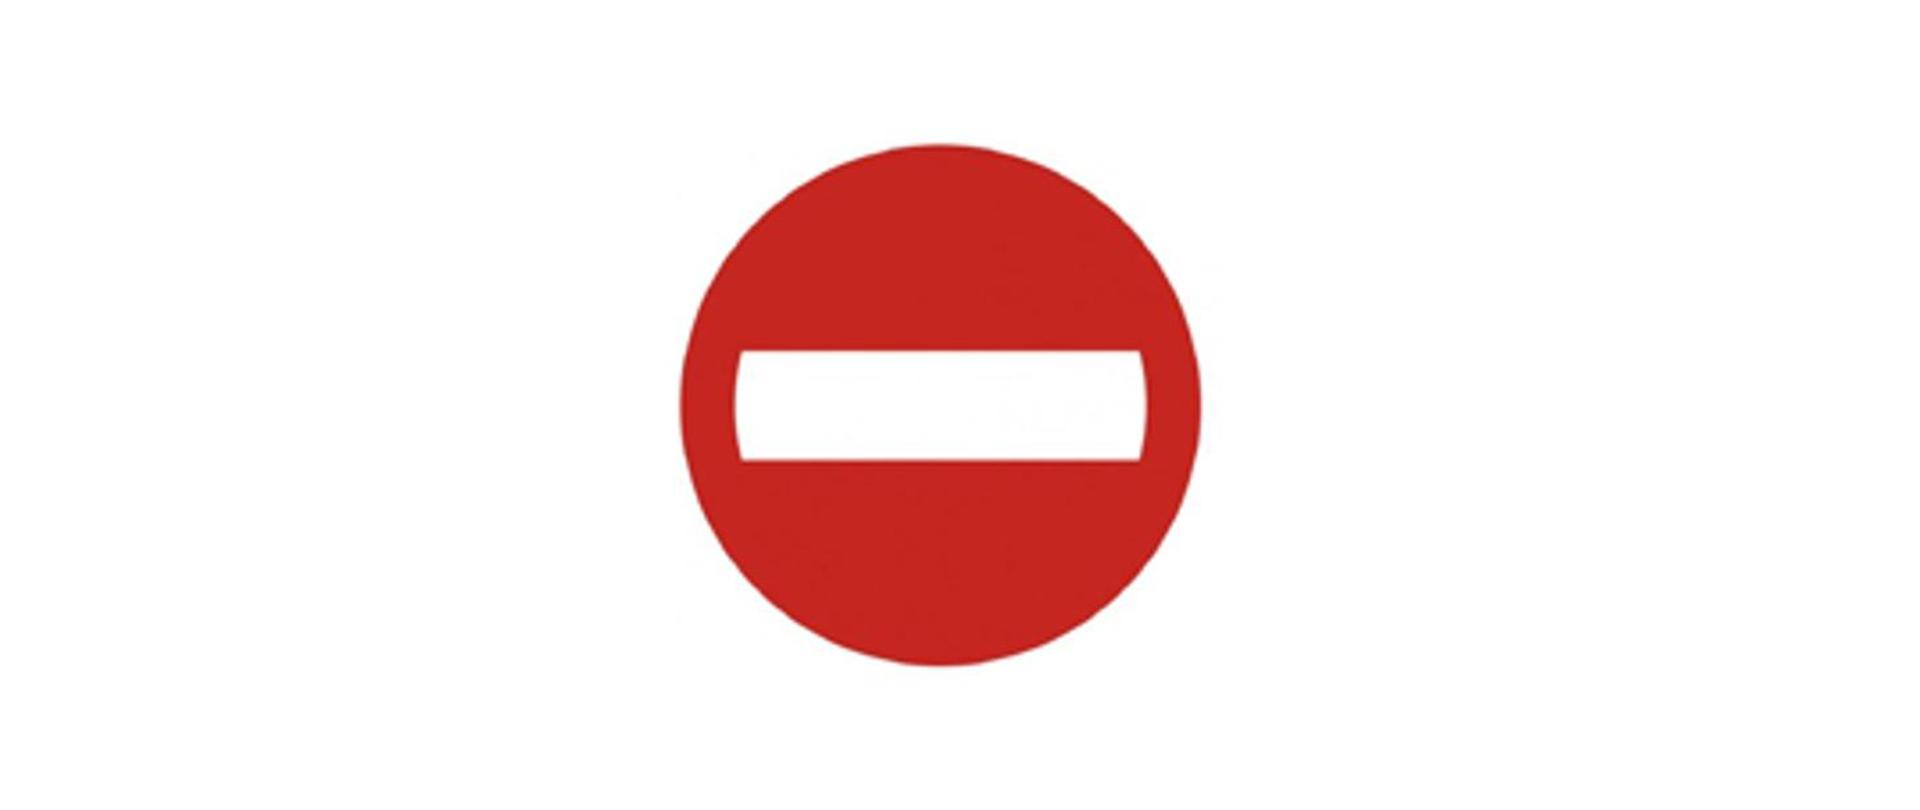 Obraz przedstawia znak drogowy - zakaz wjazdu